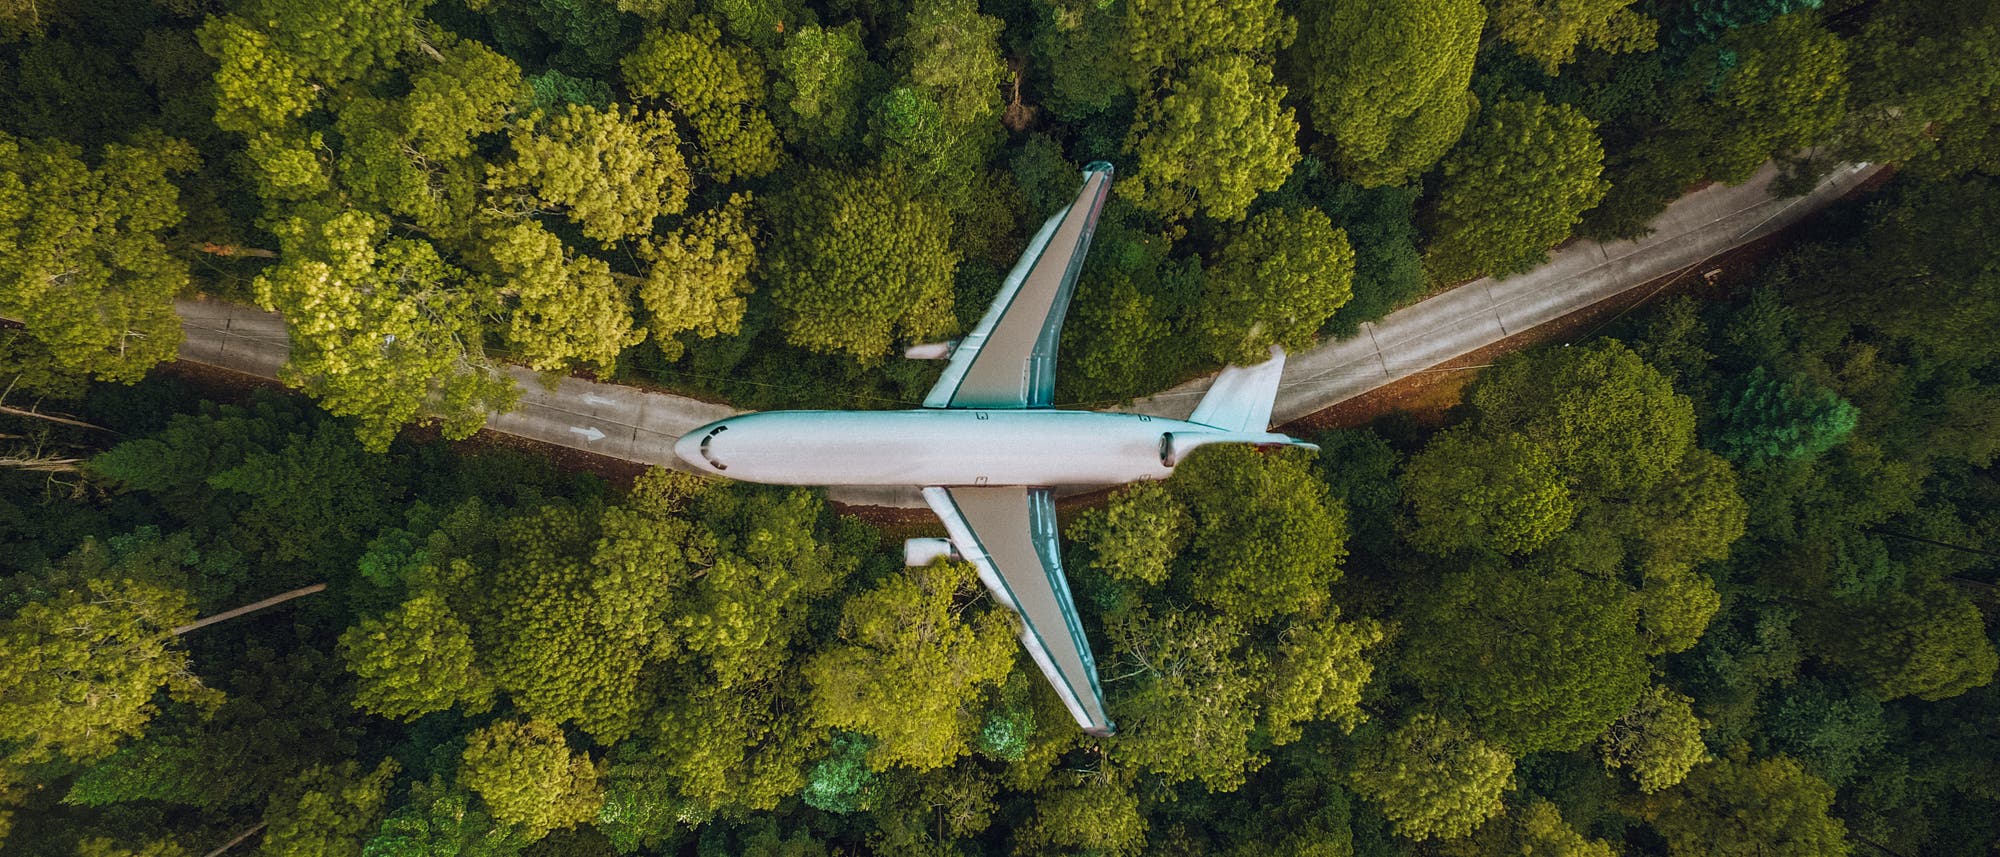 Flugzeug im Wald